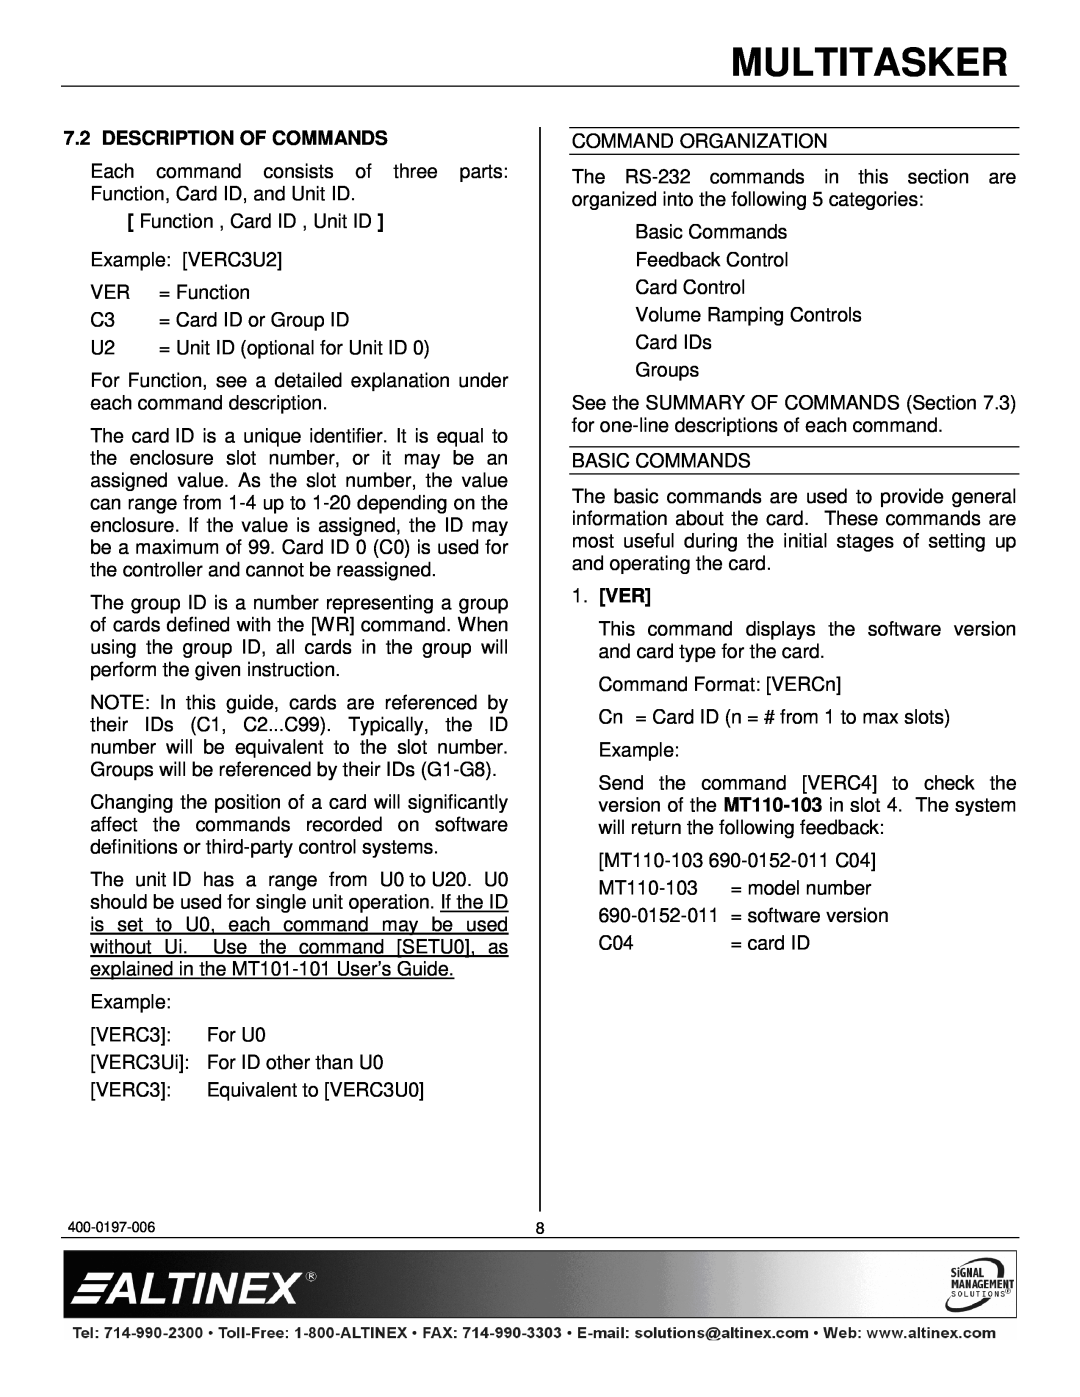 Altinex MT110-103 manual Description Of Commands, Ver, Multitasker 